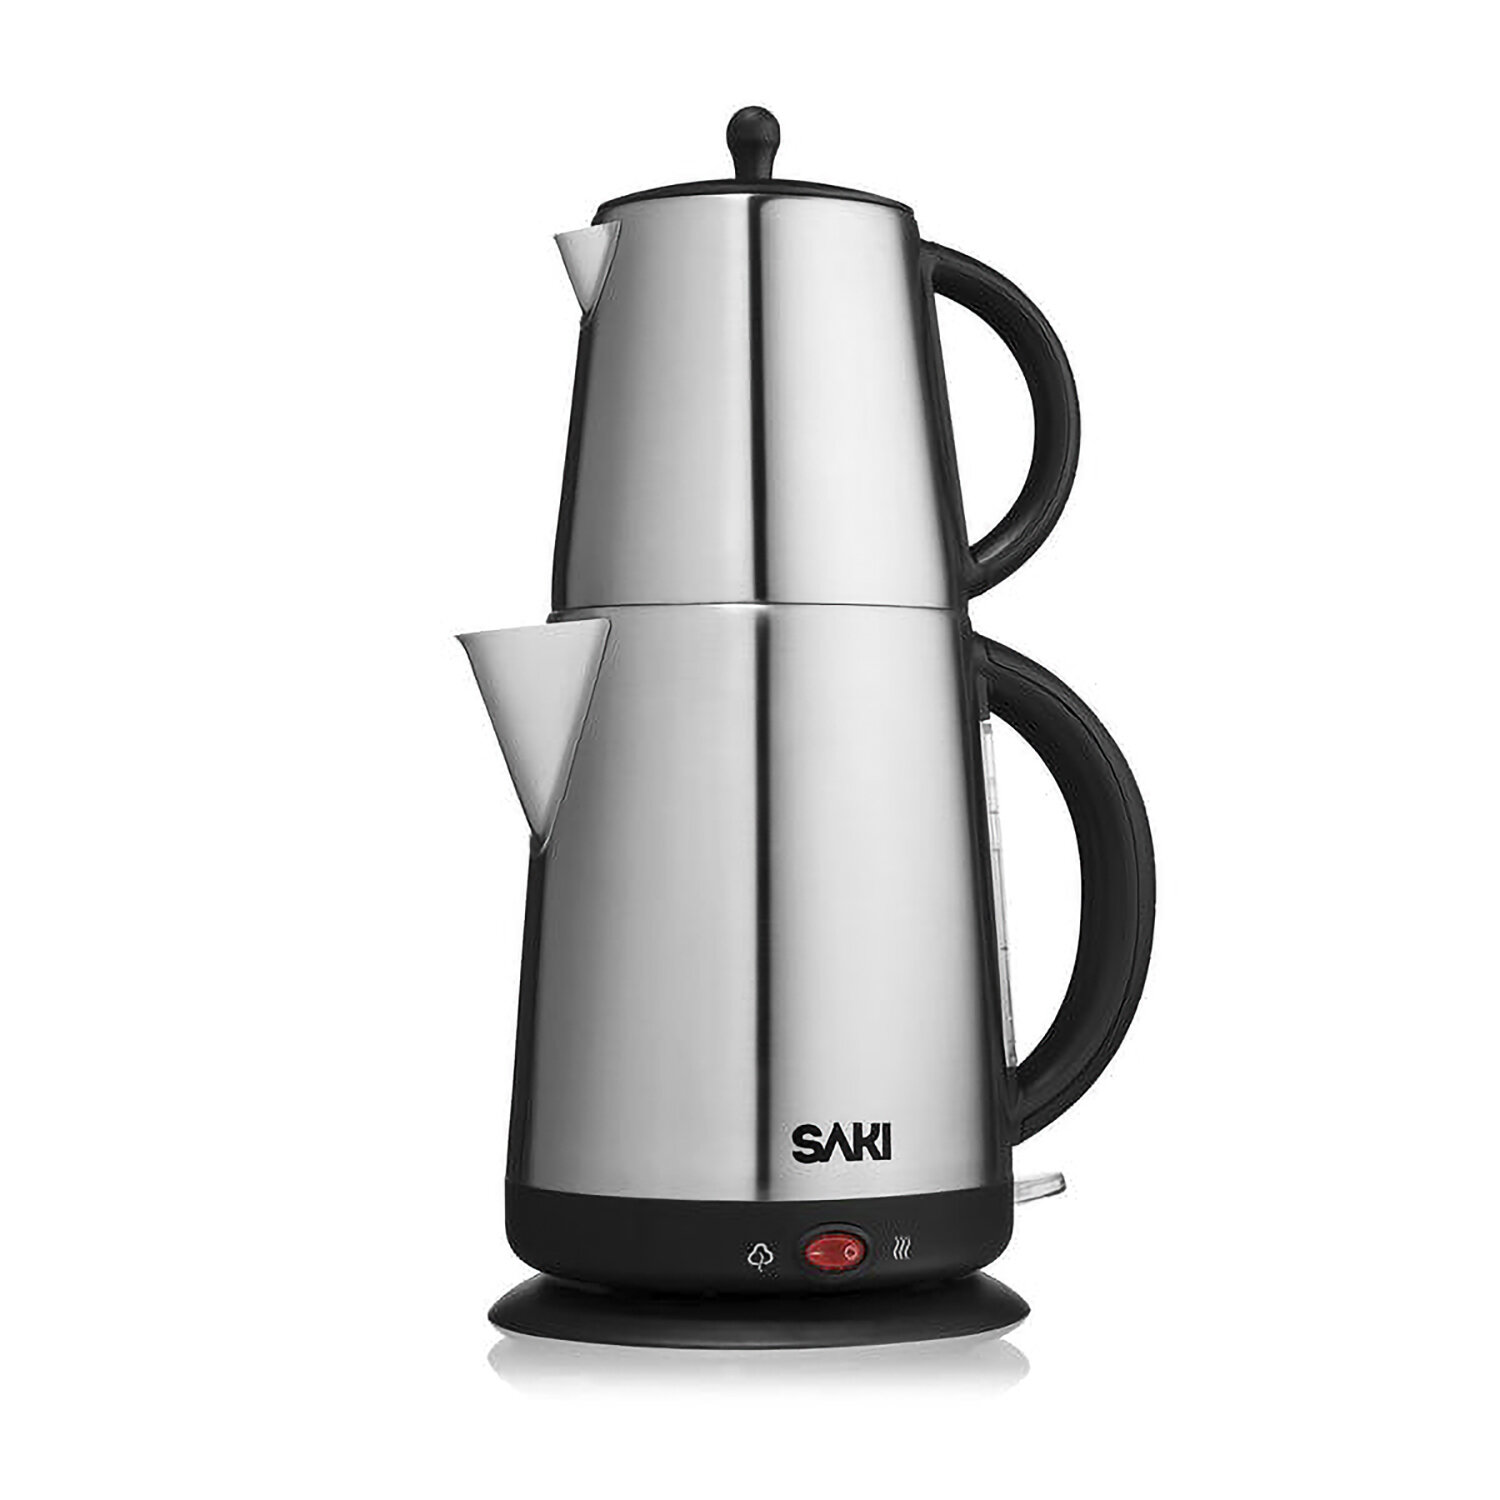 SAKI Electric Samovar - Stainless Steel Tea Maker Offer 